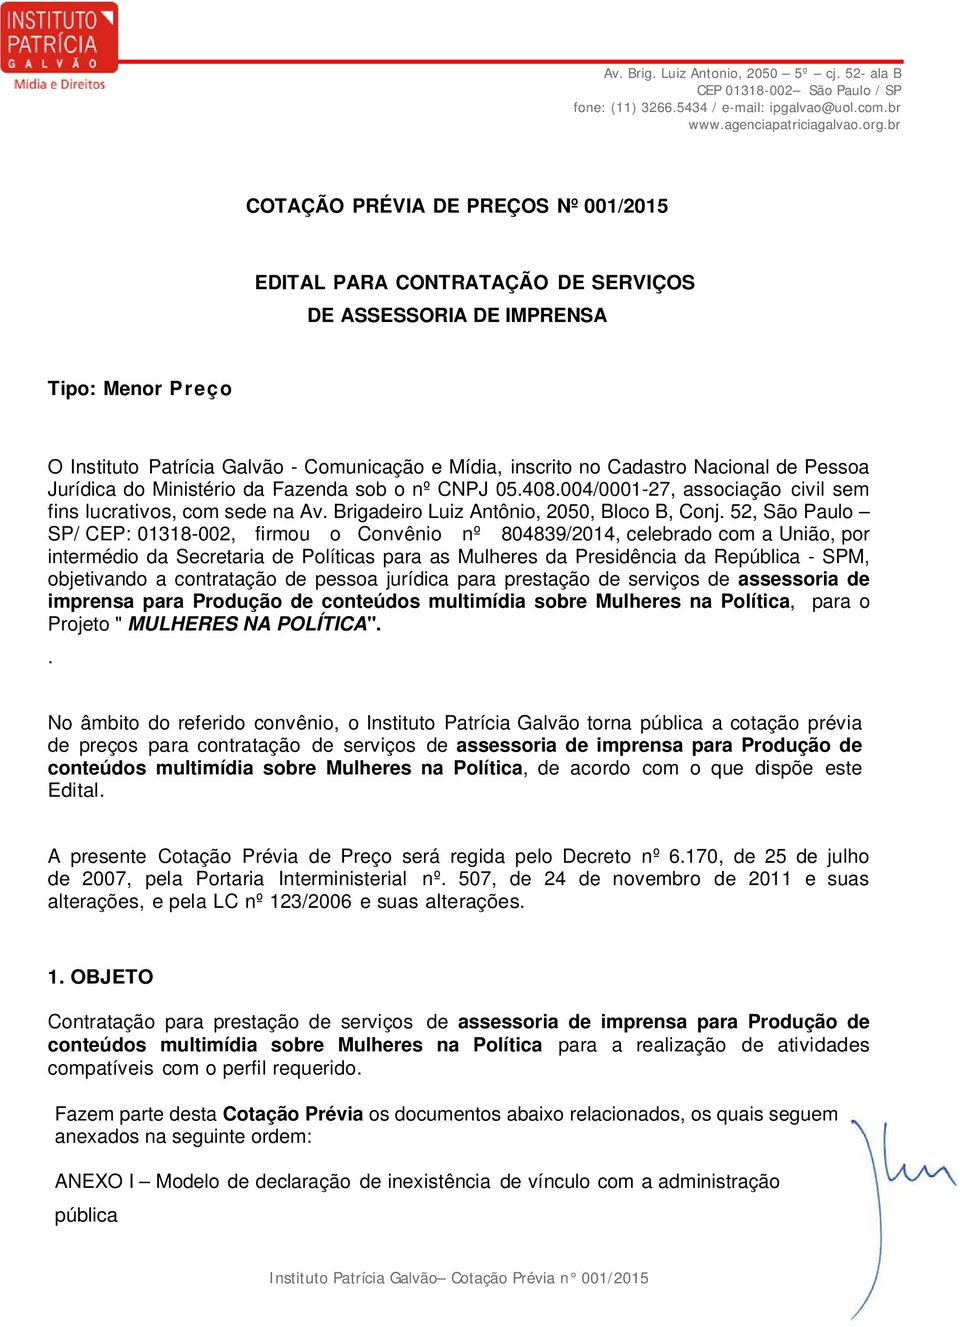 52, São Paulo SP/ CEP: 01318-002, firmou o Convênio nº 804839/2014, celebrado com a União, por intermédio da Secretaria de Políticas para as Mulheres da Presidência da República - SPM, objetivando a